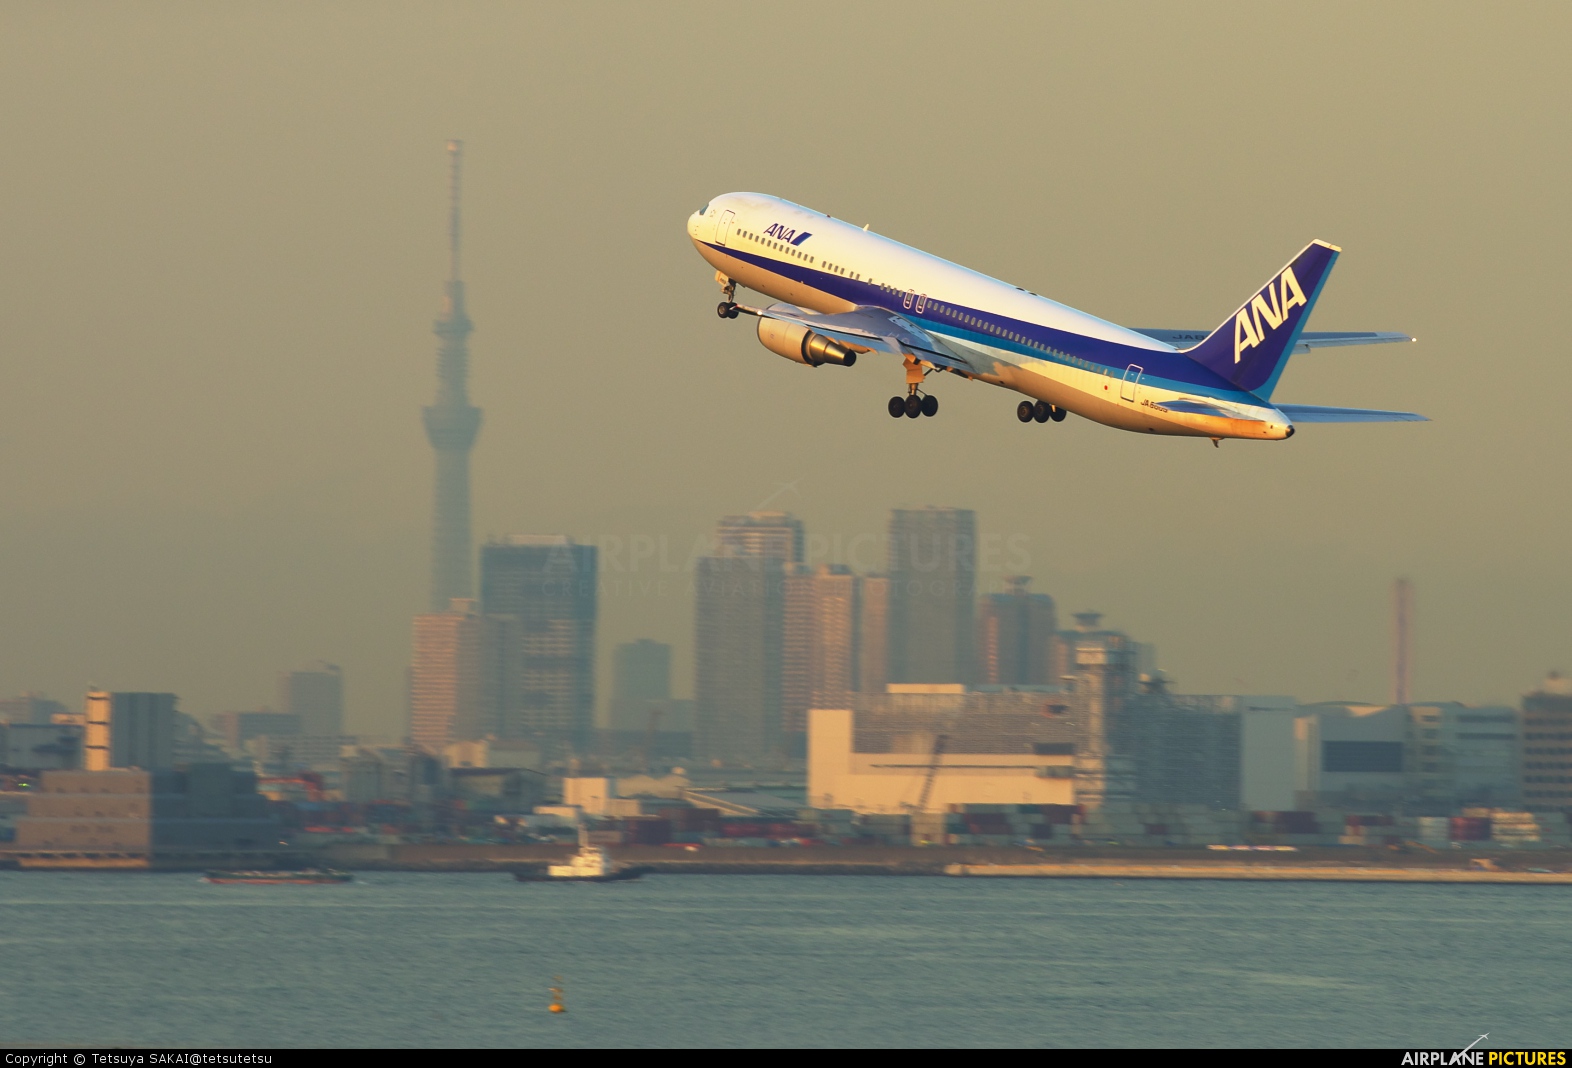 ANA - All Nippon Airways JA8567 aircraft at Tokyo - Haneda Intl